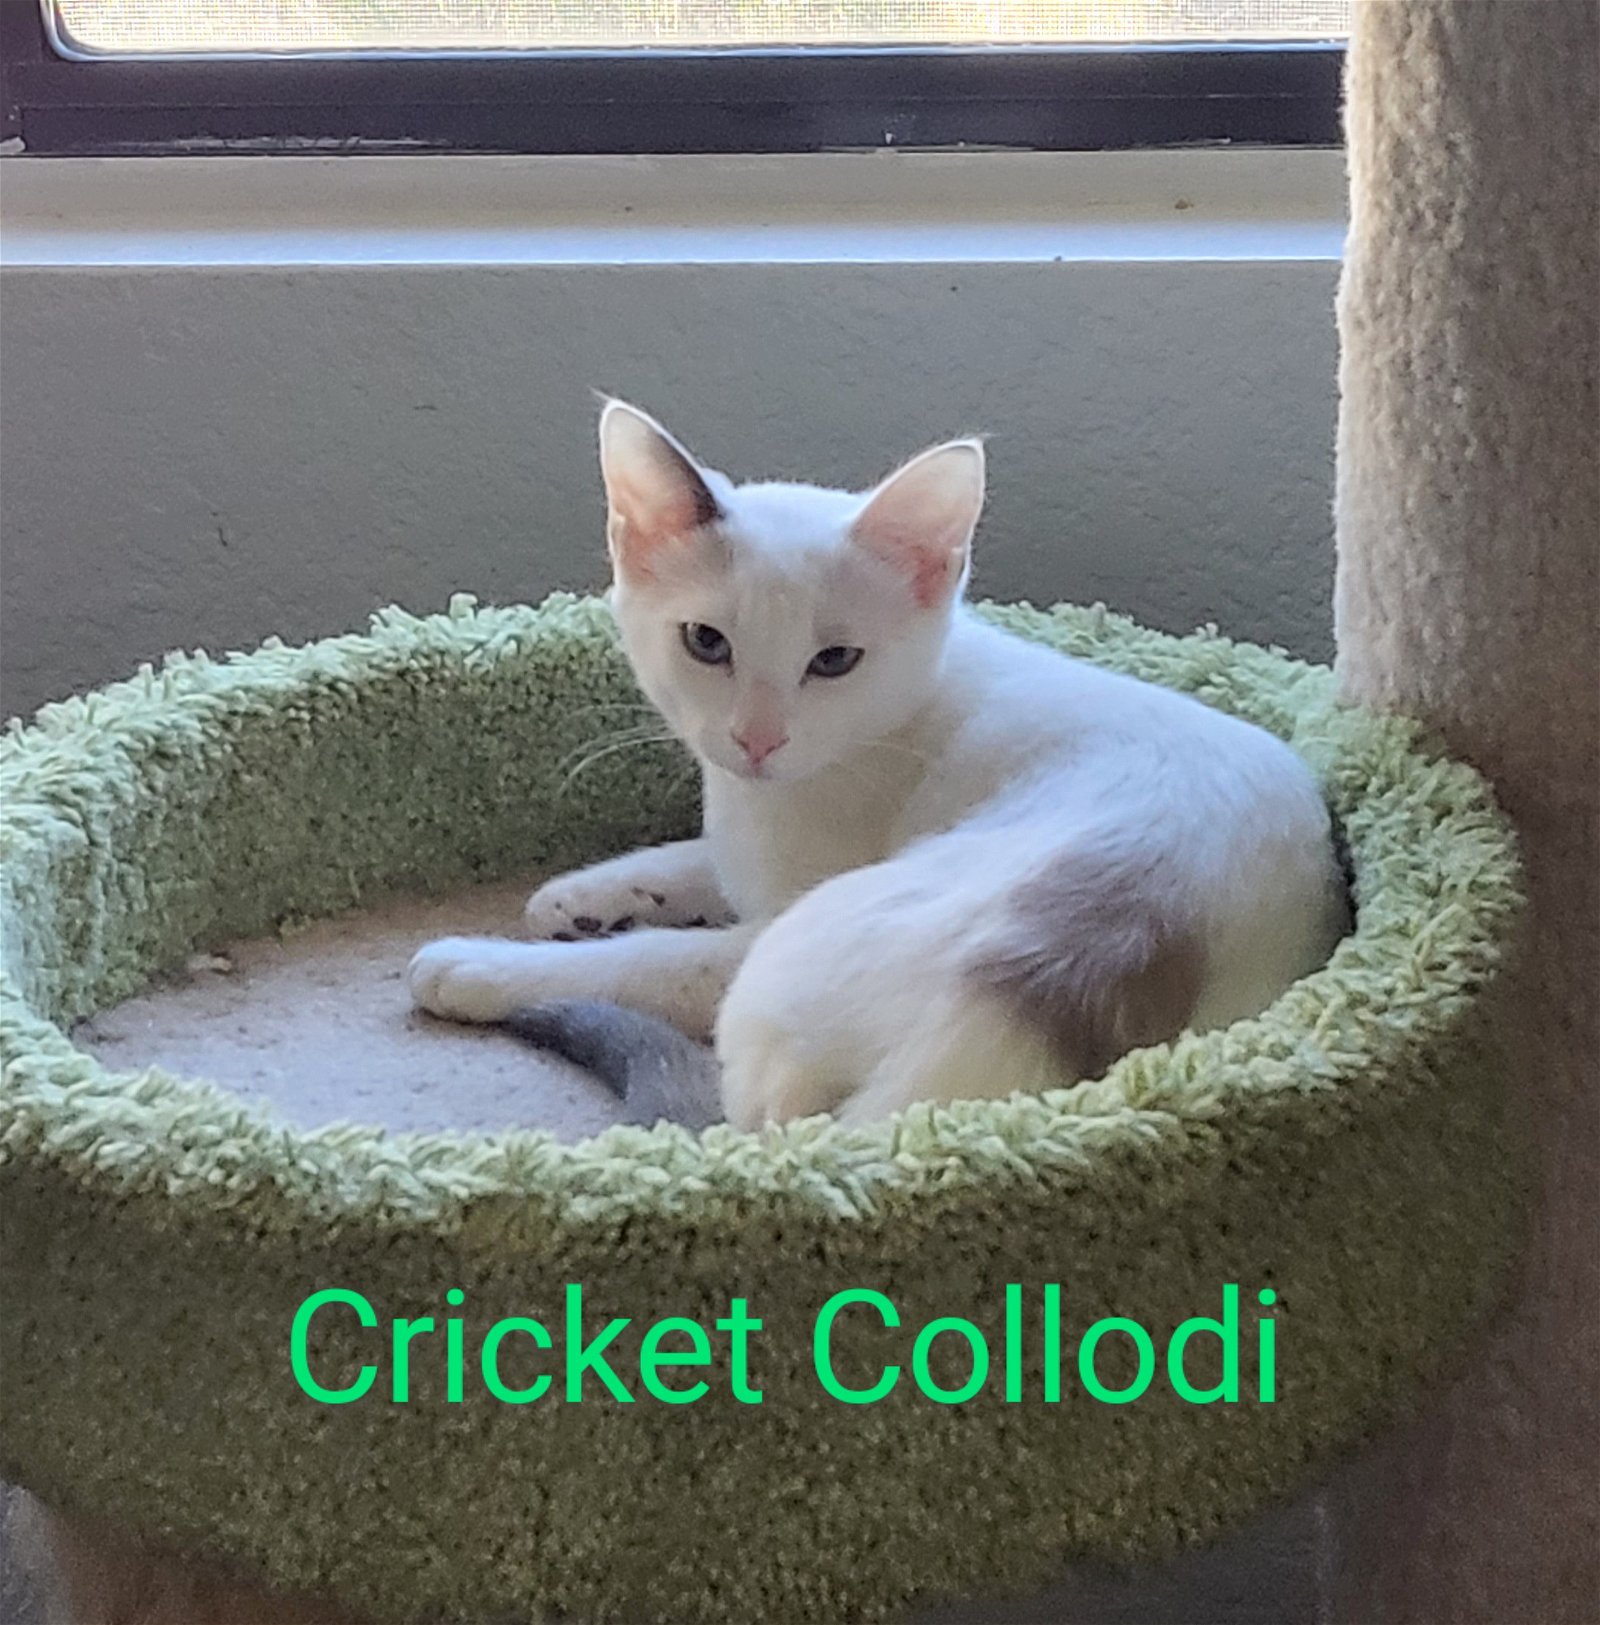 Photo of Cricket Collodi